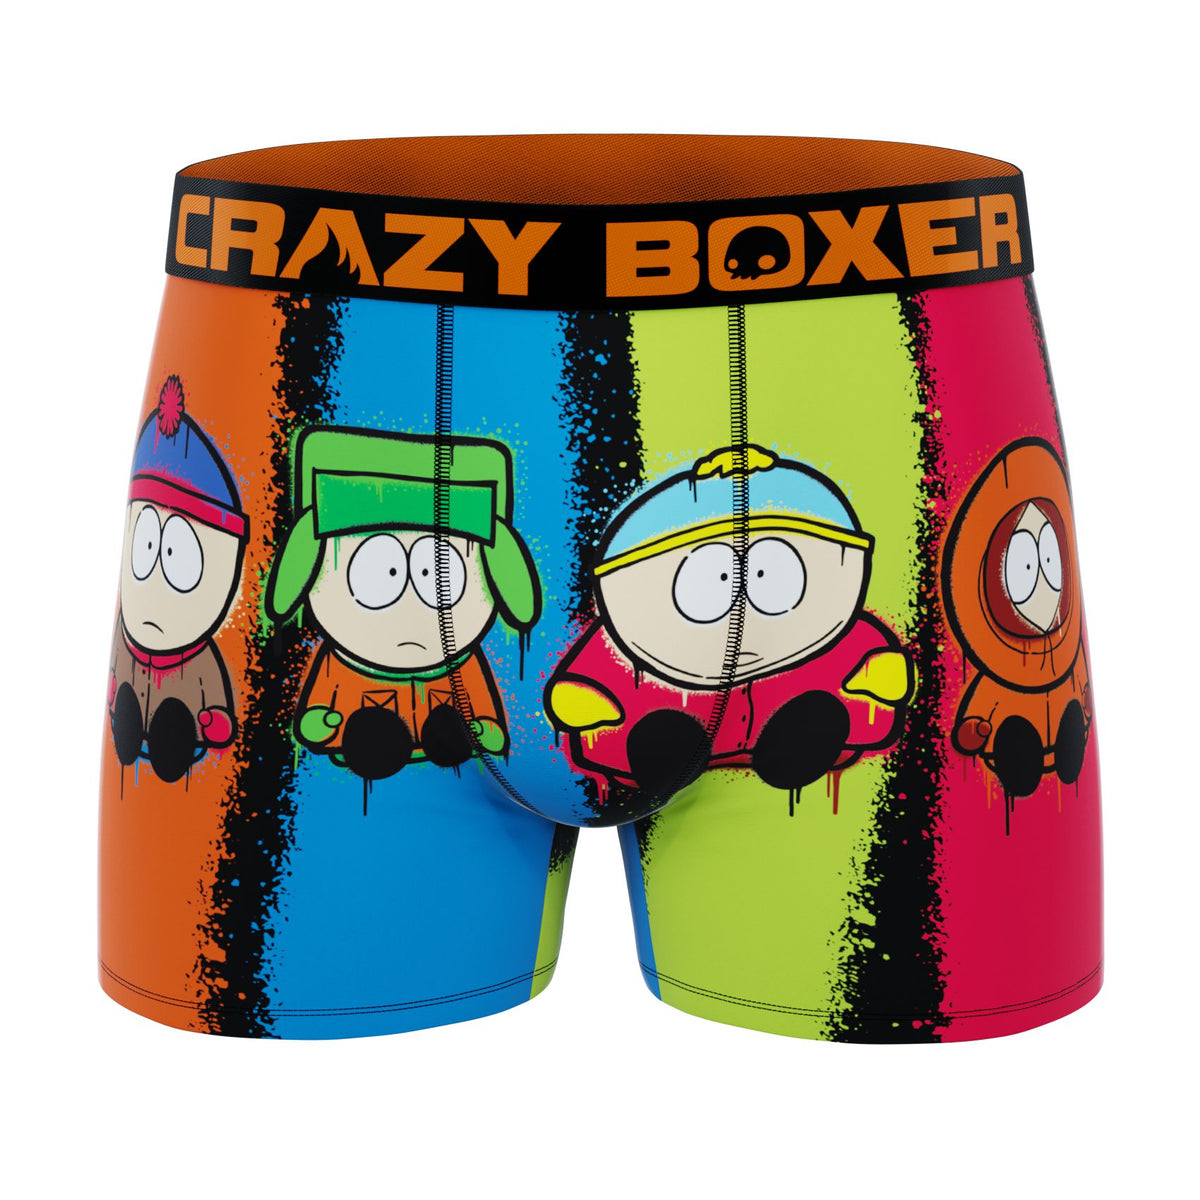 CRAZYBOXER South Park Characters Men's Boxer Briefs (2 Pack)